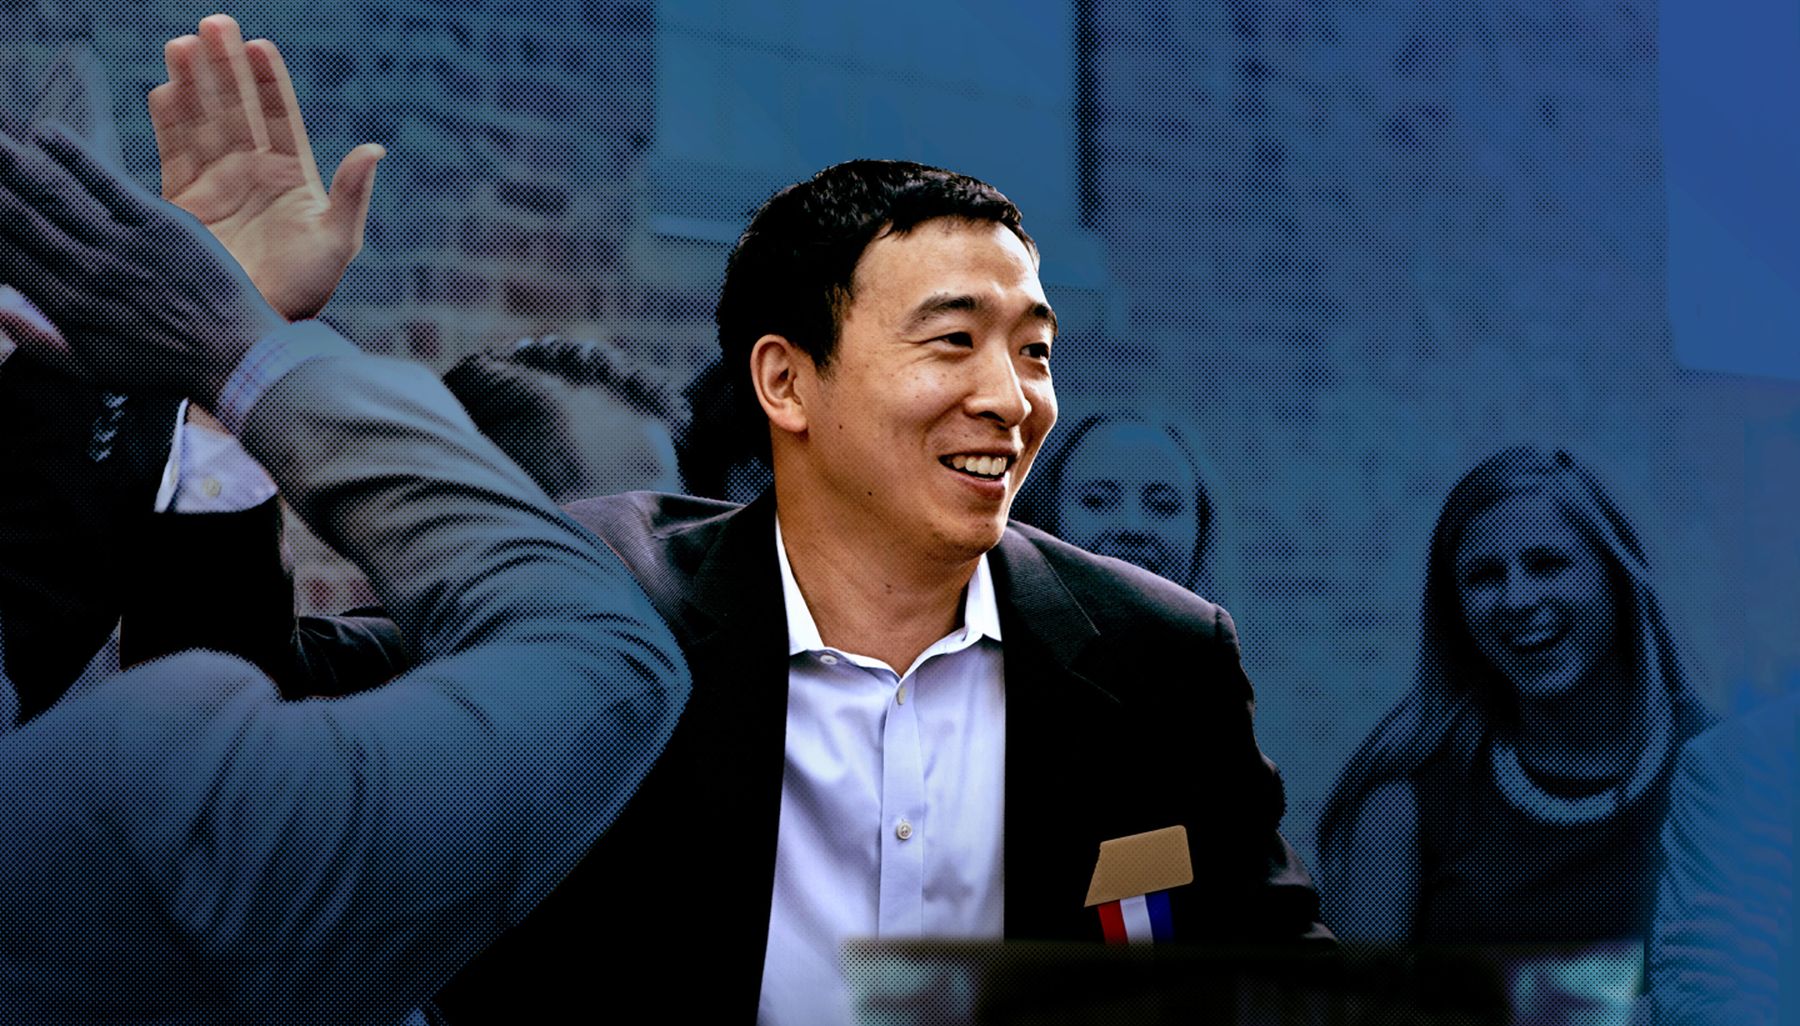 Predsjednički kandidat Andrew Yang: Ja sam onaj Azijac koji svima želi dati po 1000 dolara mjesečno